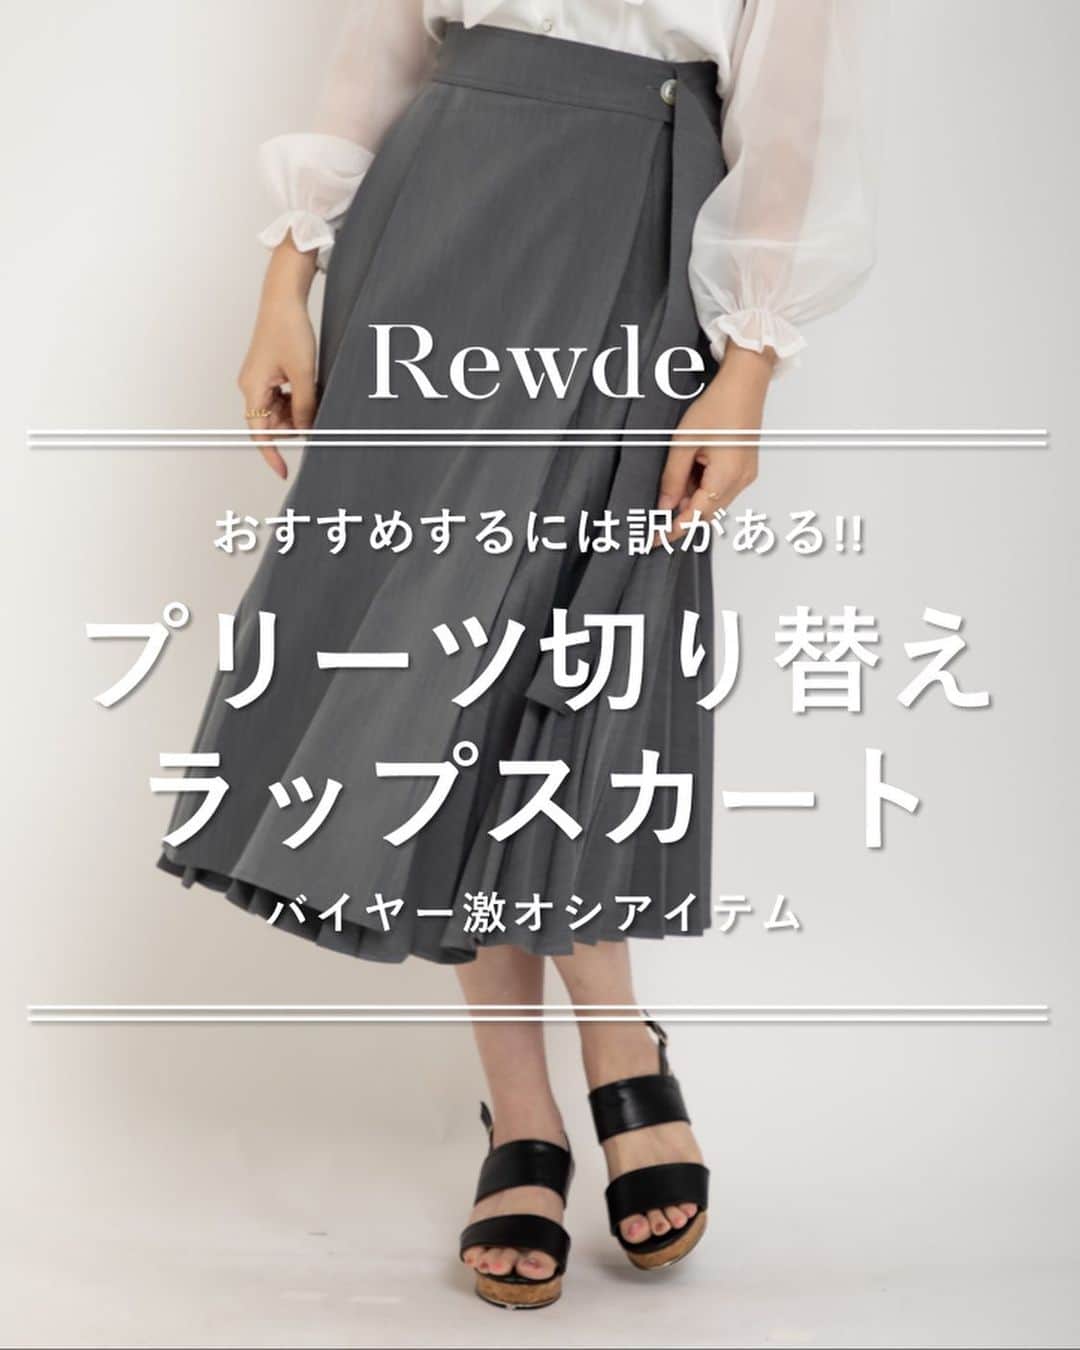 Rew de Rew 公式Instagramのインスタグラム：「.  【Rewde】プリーツ切り替え ラップスカート   ✔︎360°美シルエット  ✔︎アシメデザインがいつでも新鮮✨  ✔︎垂れるベルトが特別感   エレガンス好きにはたまらない、  プリーツの切り替えスカートです。  動くと綺麗に揺れるルックスがとてもエレガントです。  ・price 7,920 → 5,544（30%off） ・color グレー / ベージュ ・size Free   着用モデル➡️ @mio_futagawa  @ono.amina  （ @officerio2020 所属）   こちらの商品はクーポン対象商品です。  お会計時に「officerio」とご入力頂くと  10%OFFになります。  ぜひご利用下さい。  #carinacloset #カリーナクローゼット #rewde #rewderew #ルゥデ #at  #スカートコーデ  #outfit」